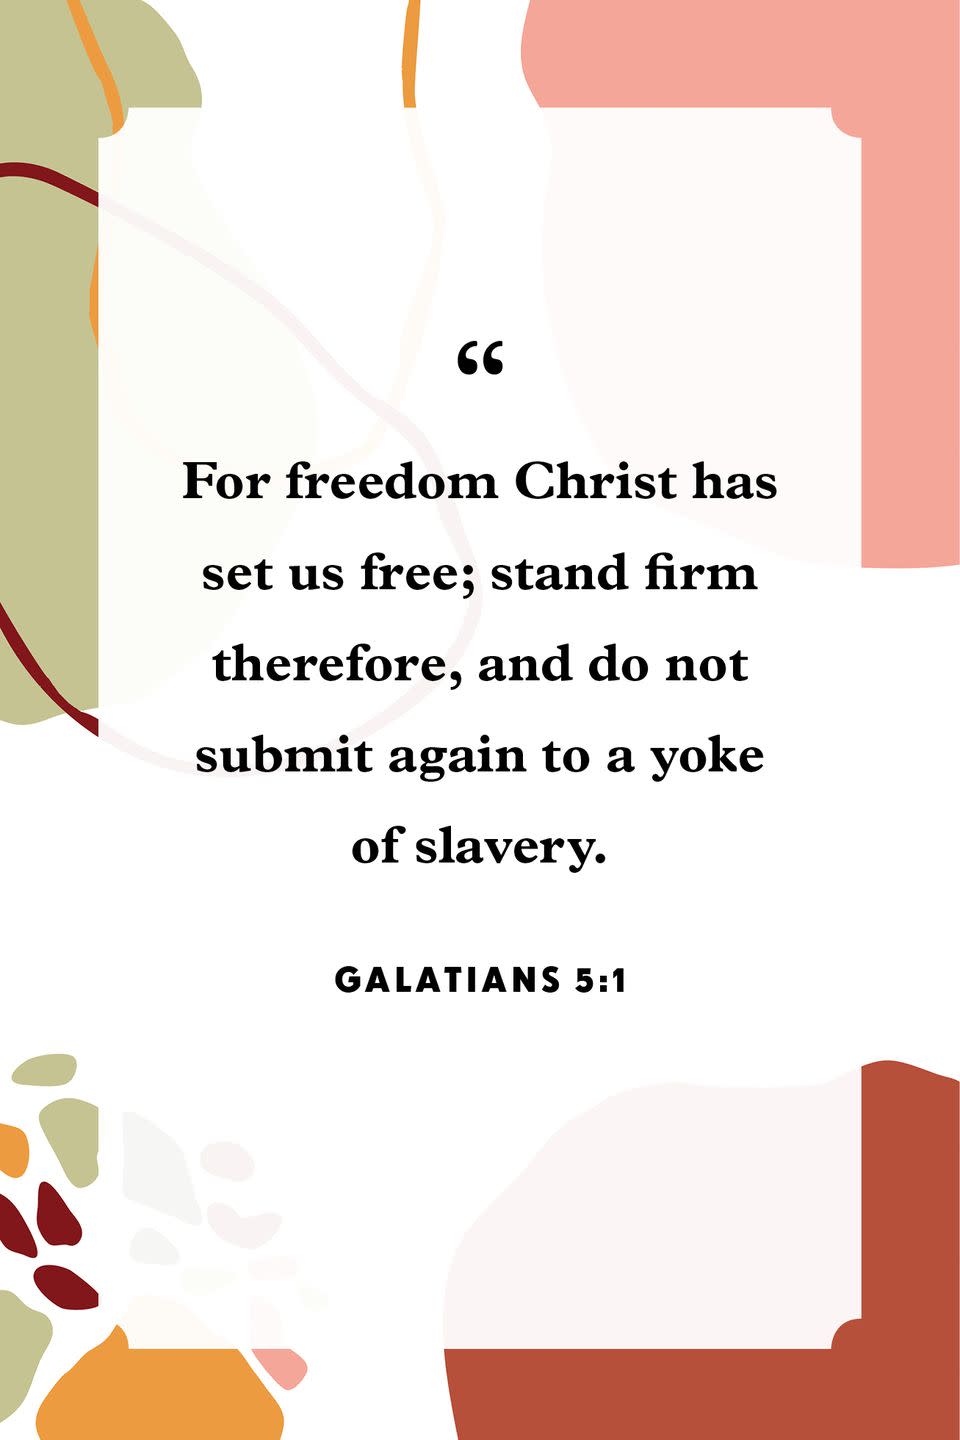 21) Galatians 5:1